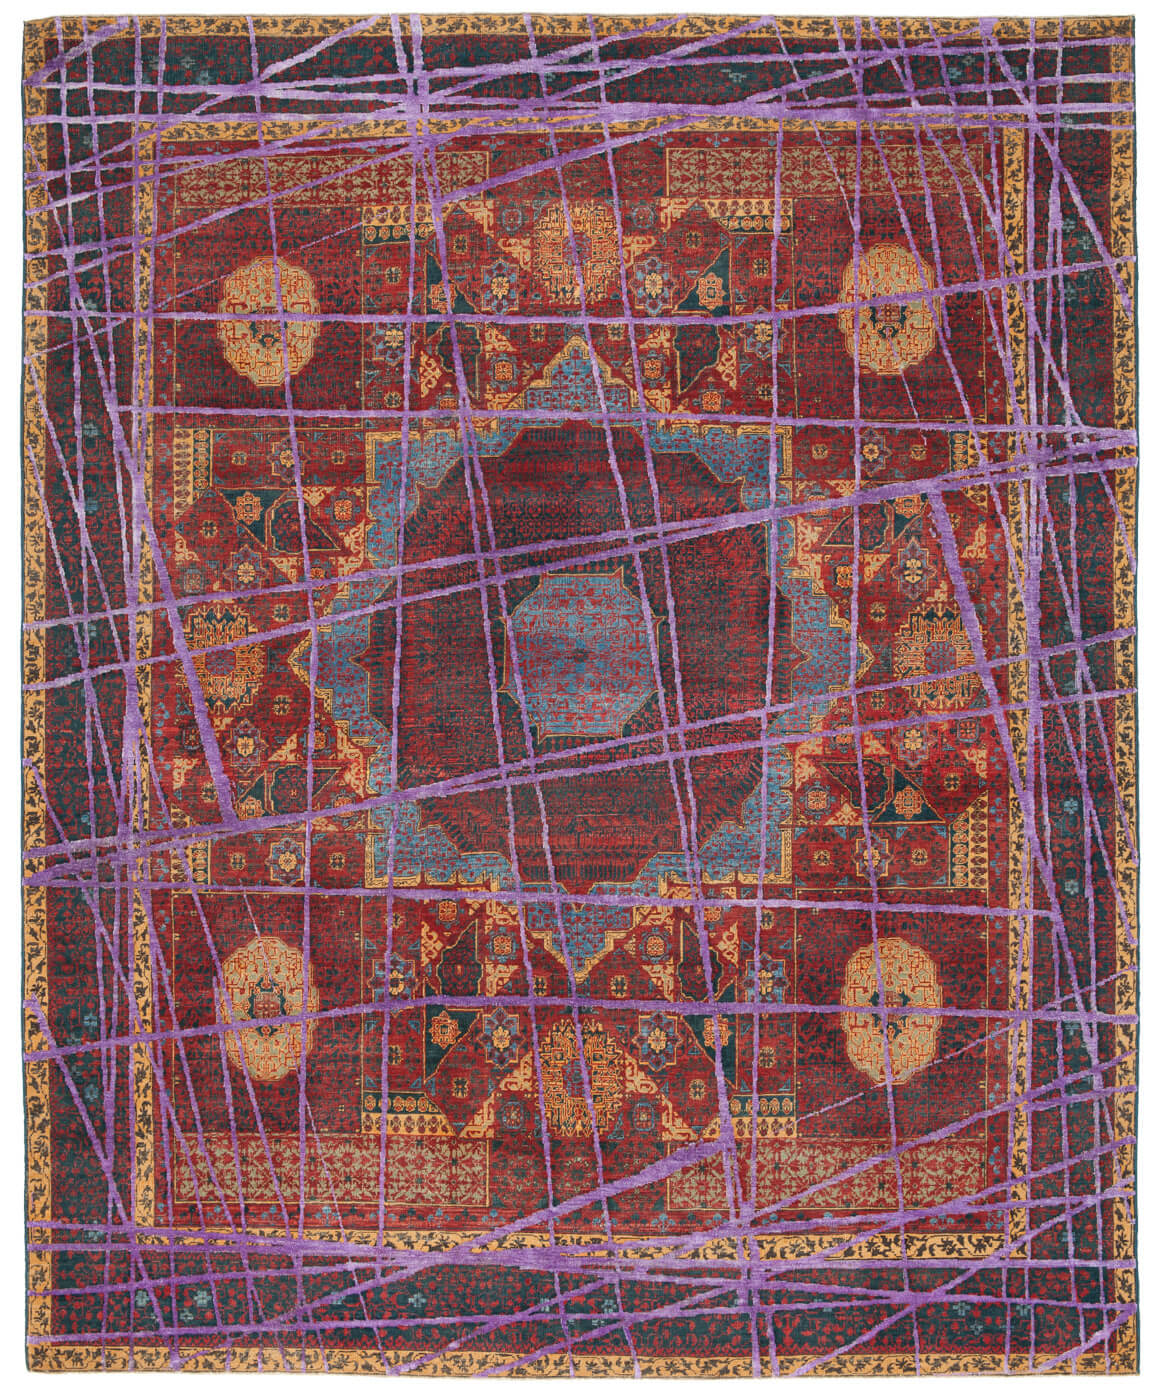 Ковер ручной работы Mamluk Columbus Wrapped пурпурный от Яна Ката